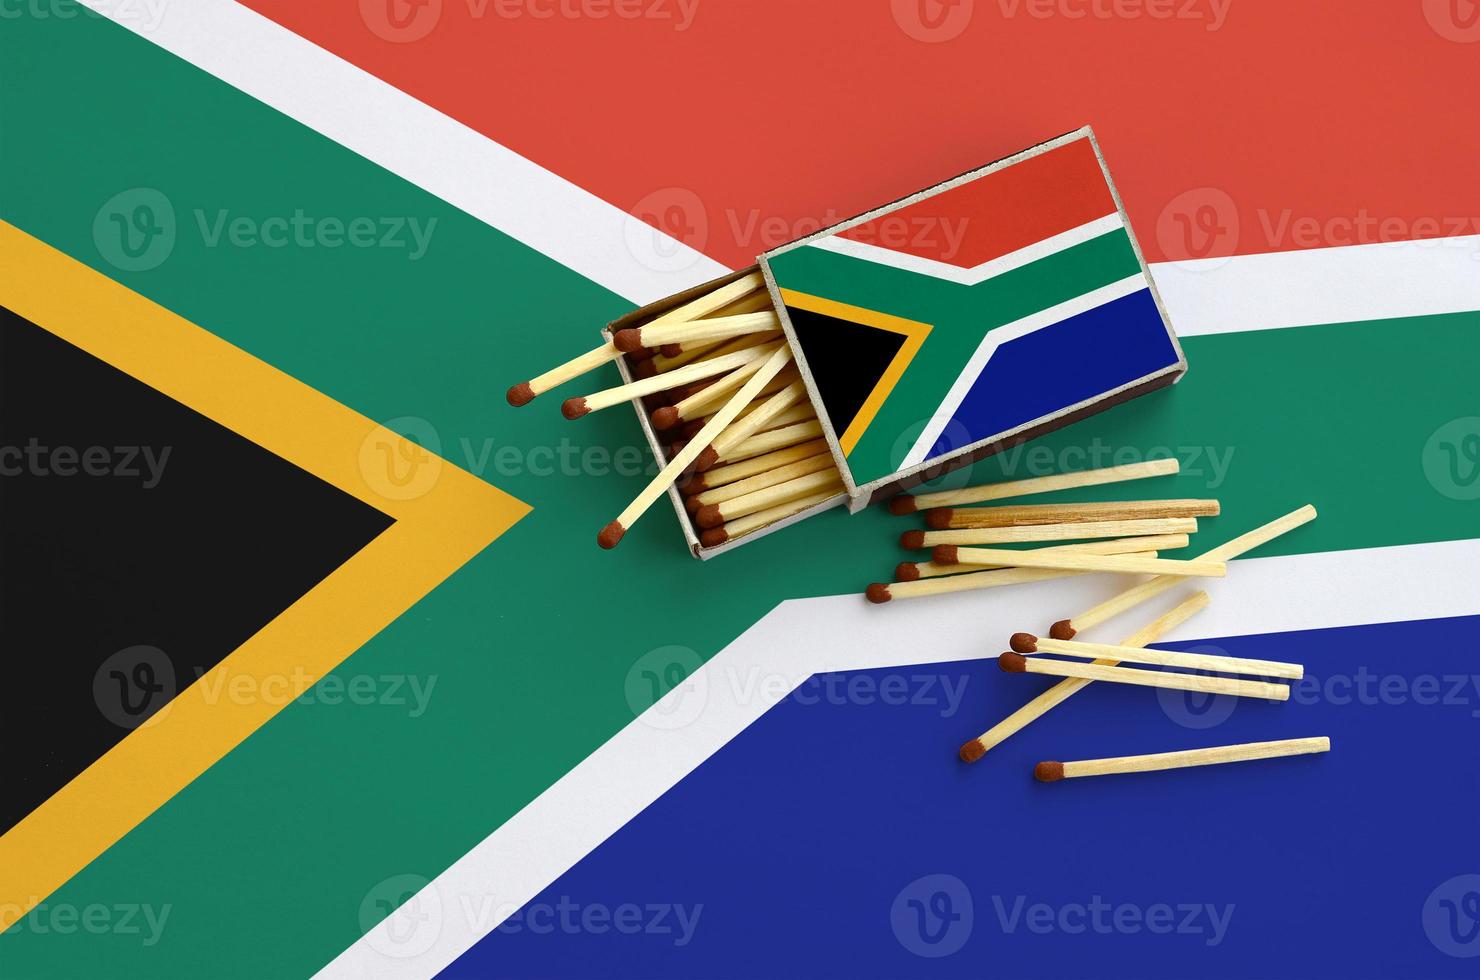 a bandeira da áfrica do sul é mostrada em uma caixa de fósforos aberta, da qual caem vários fósforos e fica em uma grande bandeira foto